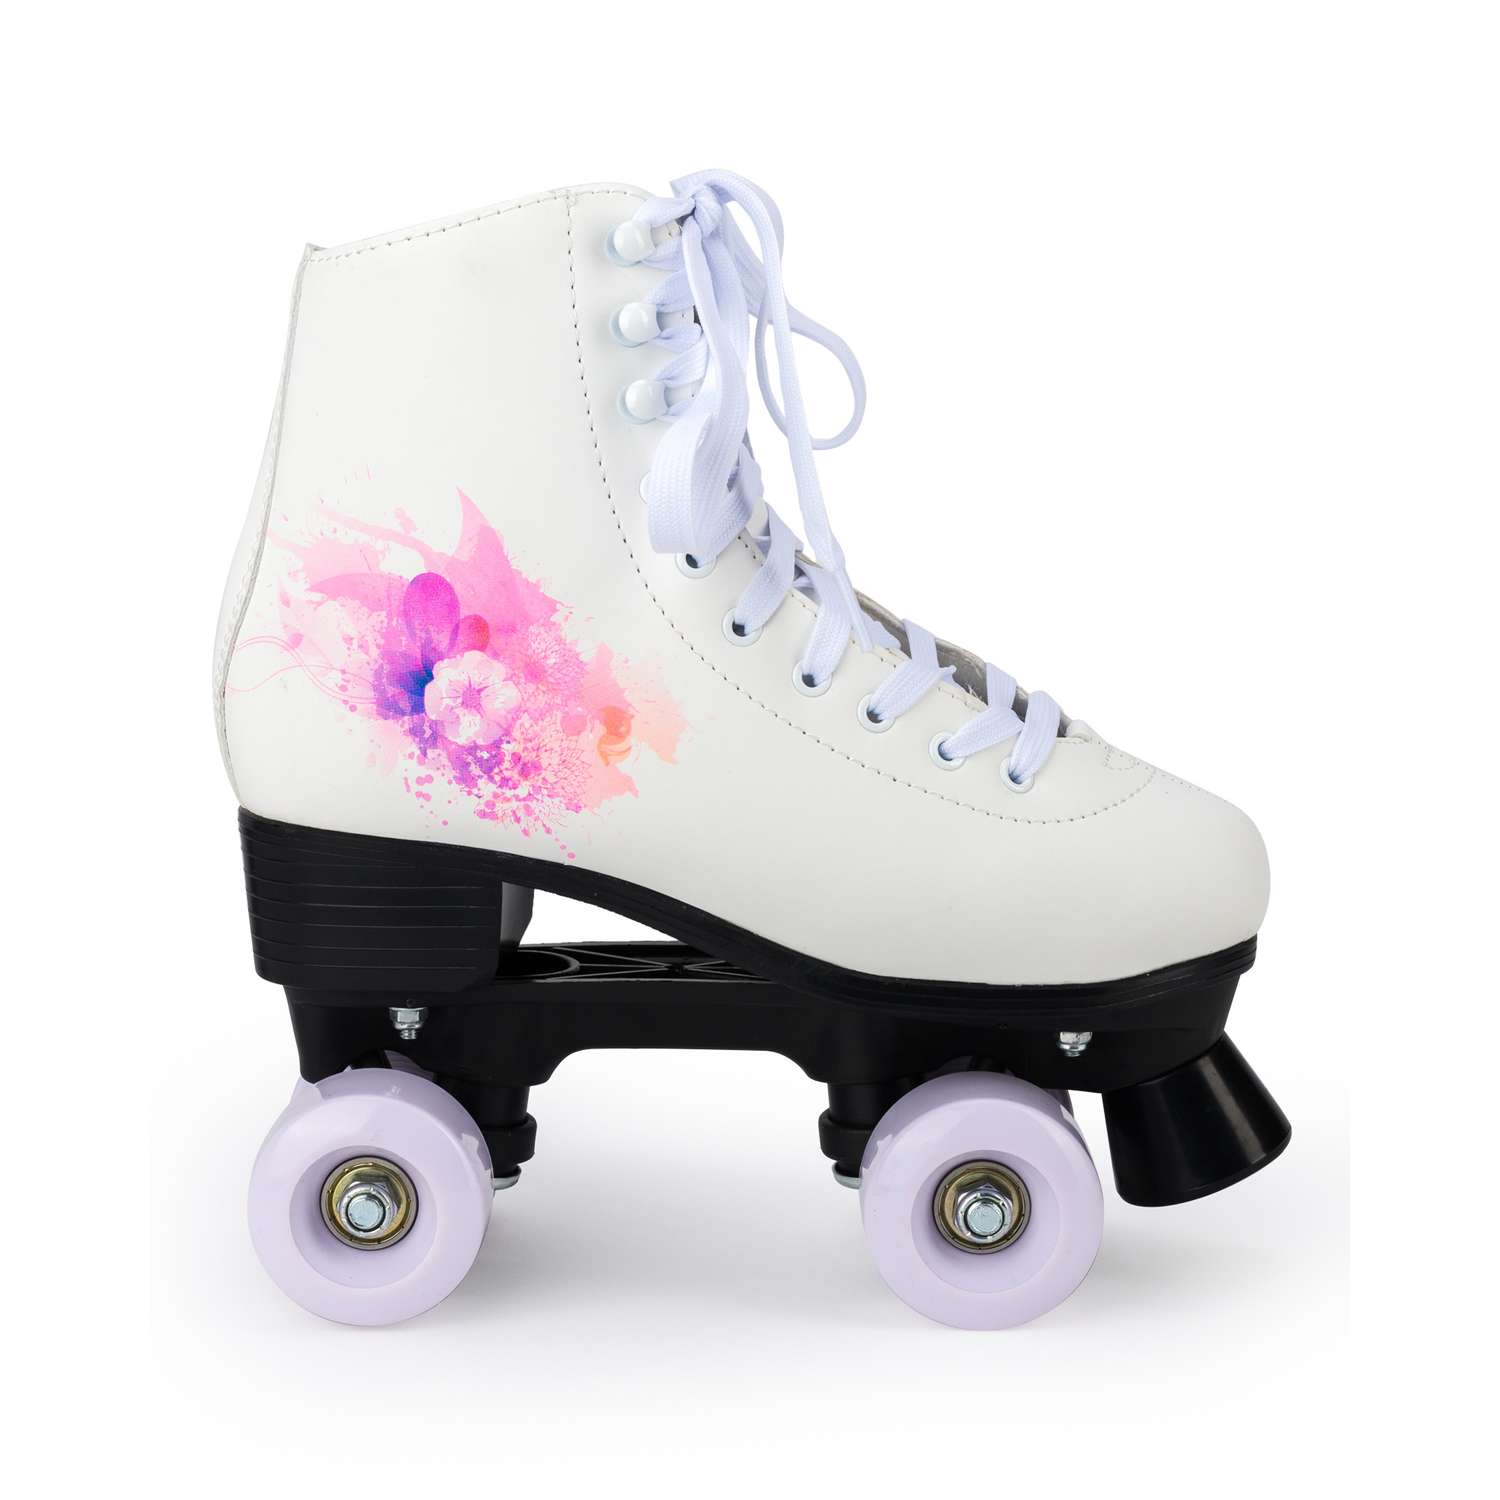 Роликовые коньки SXRide Roller skate YXSKT04WPUR40 белые с фиолетово-розовым орнаментом размер 40 - фото 2